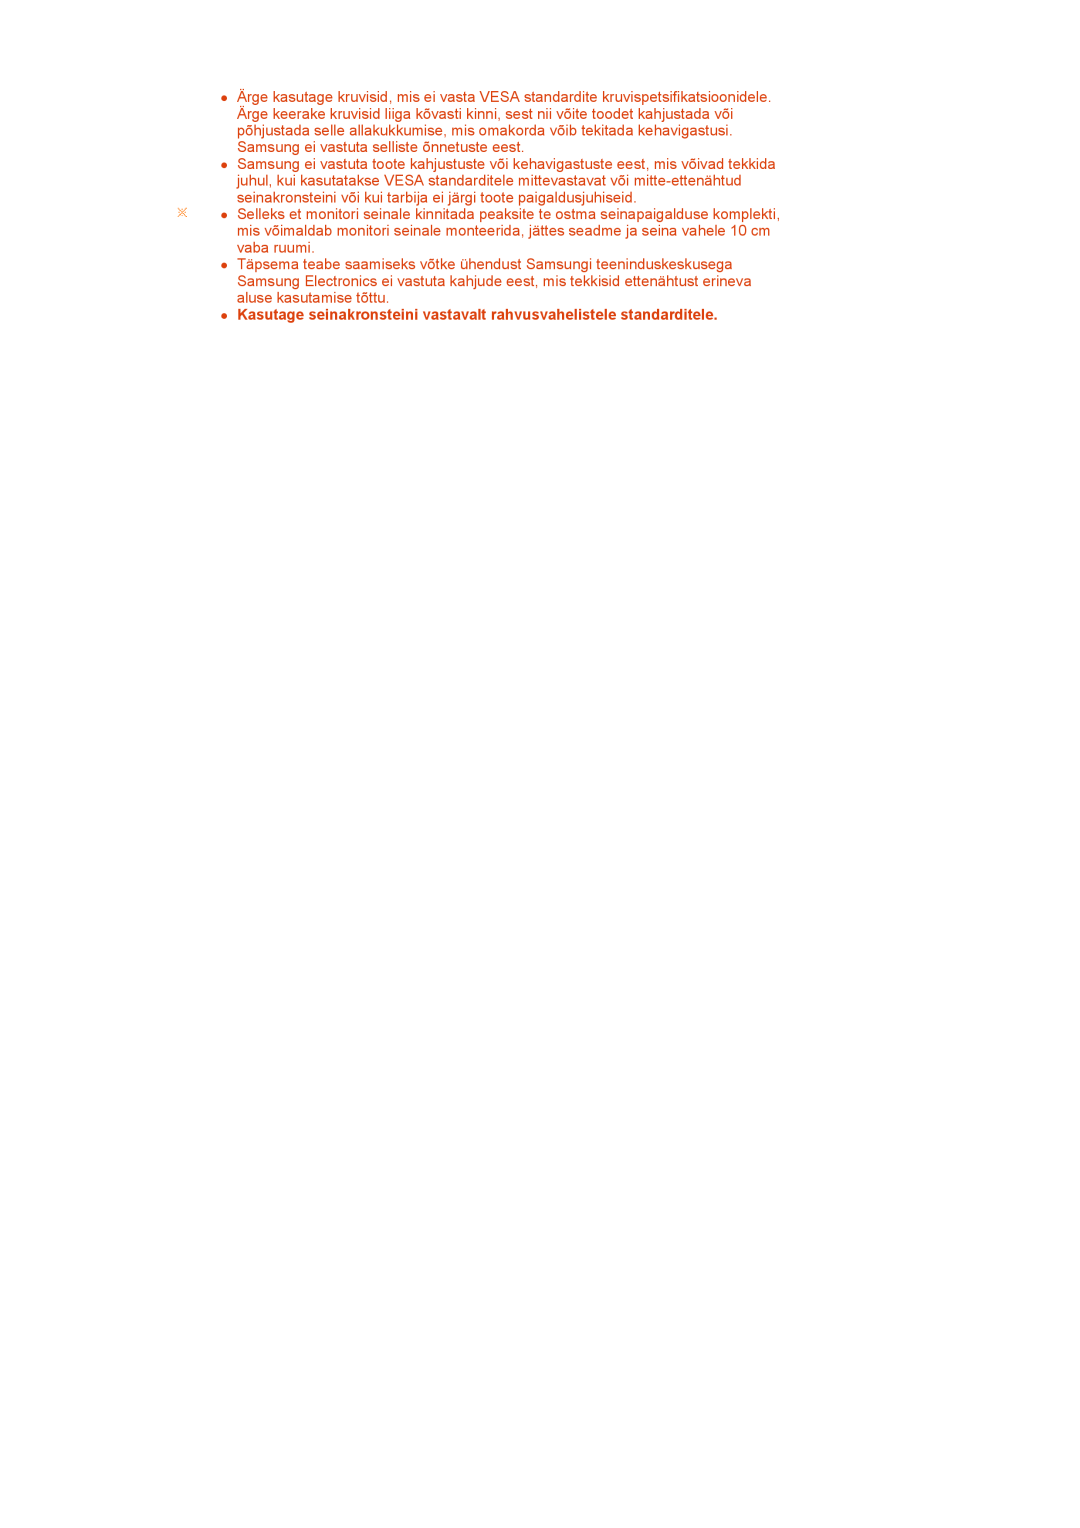 Samsung LS27HUBCB/EDC manual z Kasutage seinakronsteini vastavalt rahvusvahelistele standarditele 